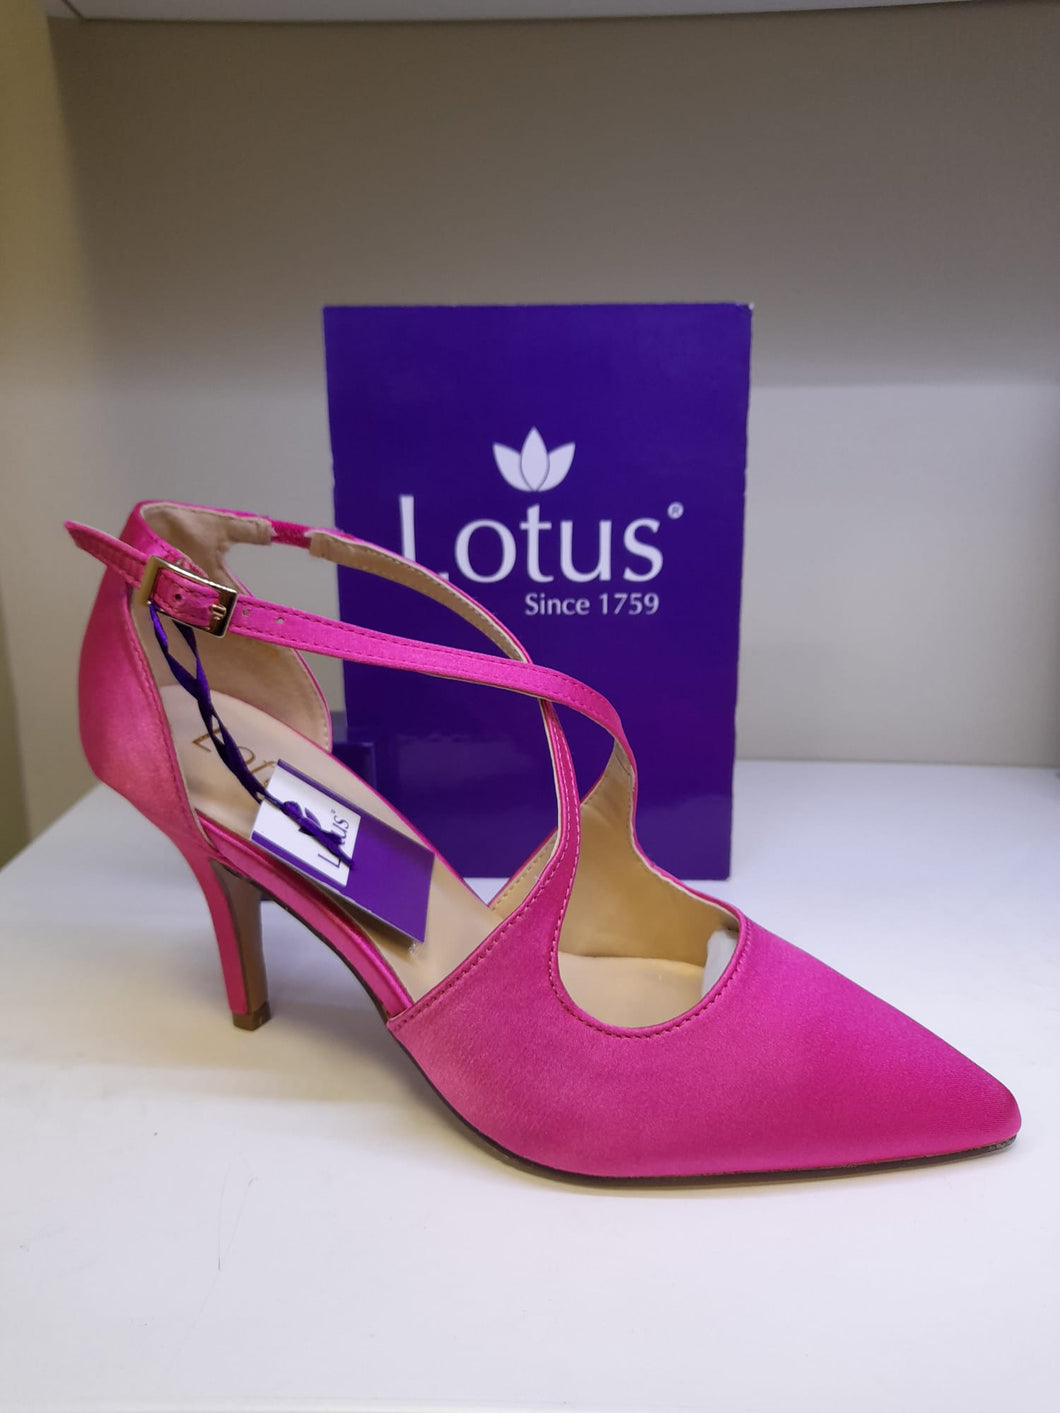 Lotus Ladies Smart Shoe - Hot Pink Satin